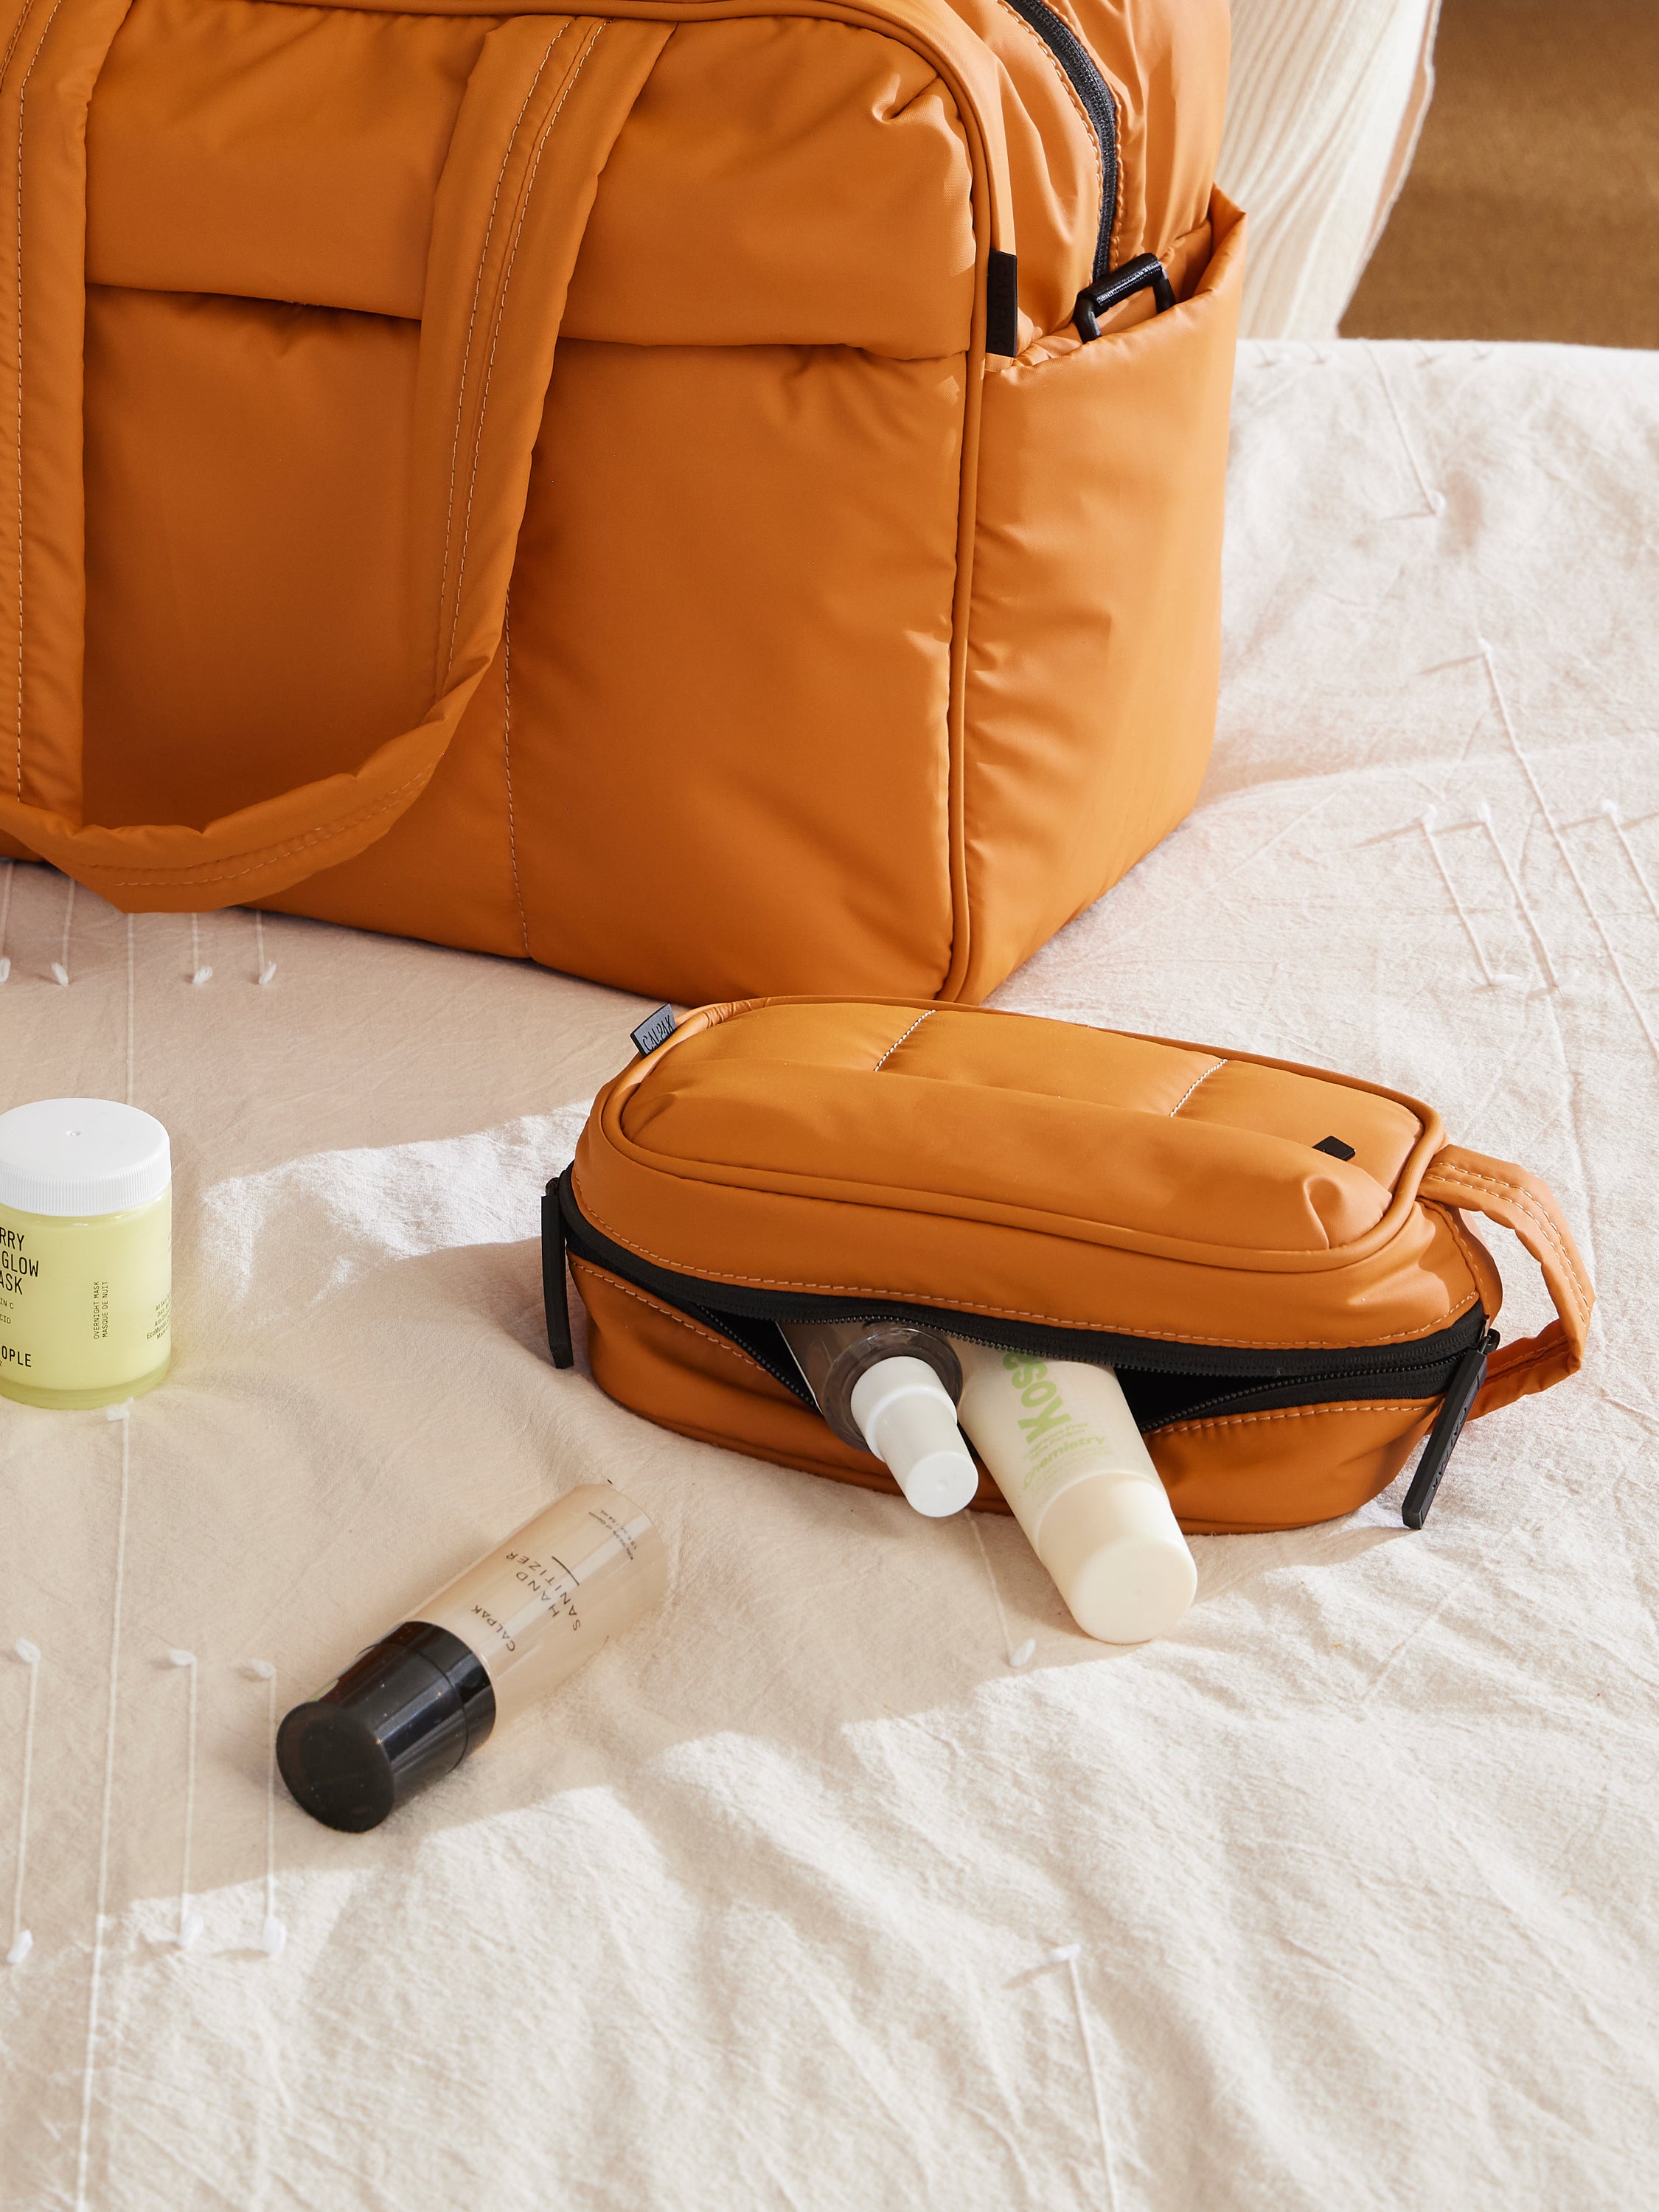 CALPAK Luka Toiletry Bag for skincare and makeup in pumpkin